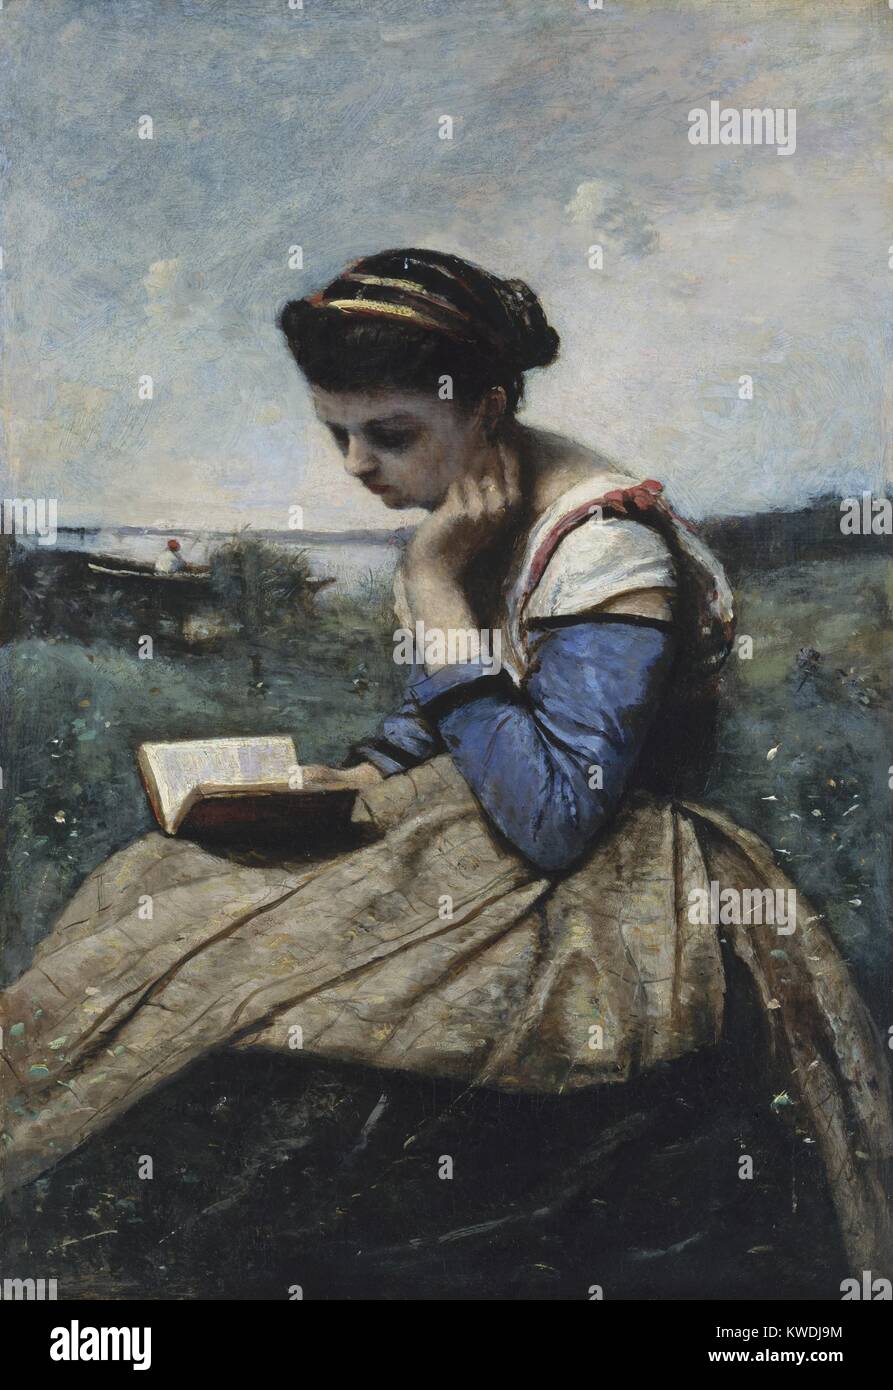 Eine Frau lesen, von Camille Corot, 1869-70, Französische Malerei, Öl auf Leinwand. Dies war die erste Abbildung Malerei Corot auf dem Pariser Salon ausgestellt, wenn er eine etablierte und angesehene Künstler (BSLOC 2017 9 96) Stockfoto